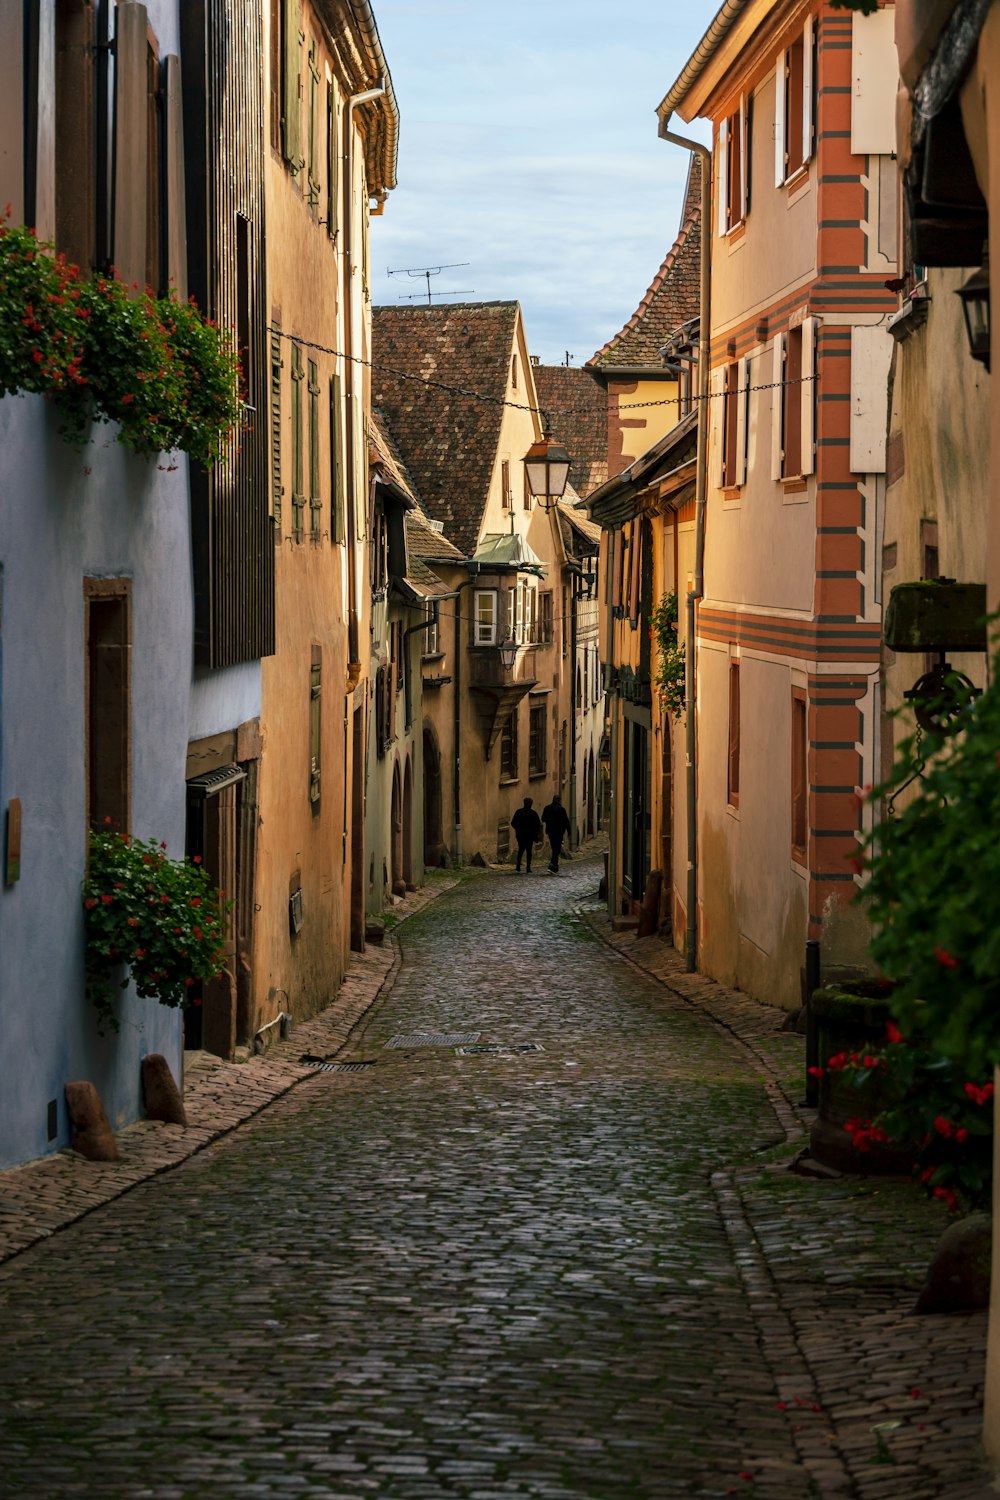 Una estrecha calle empedrada en una antigua ciudad europea